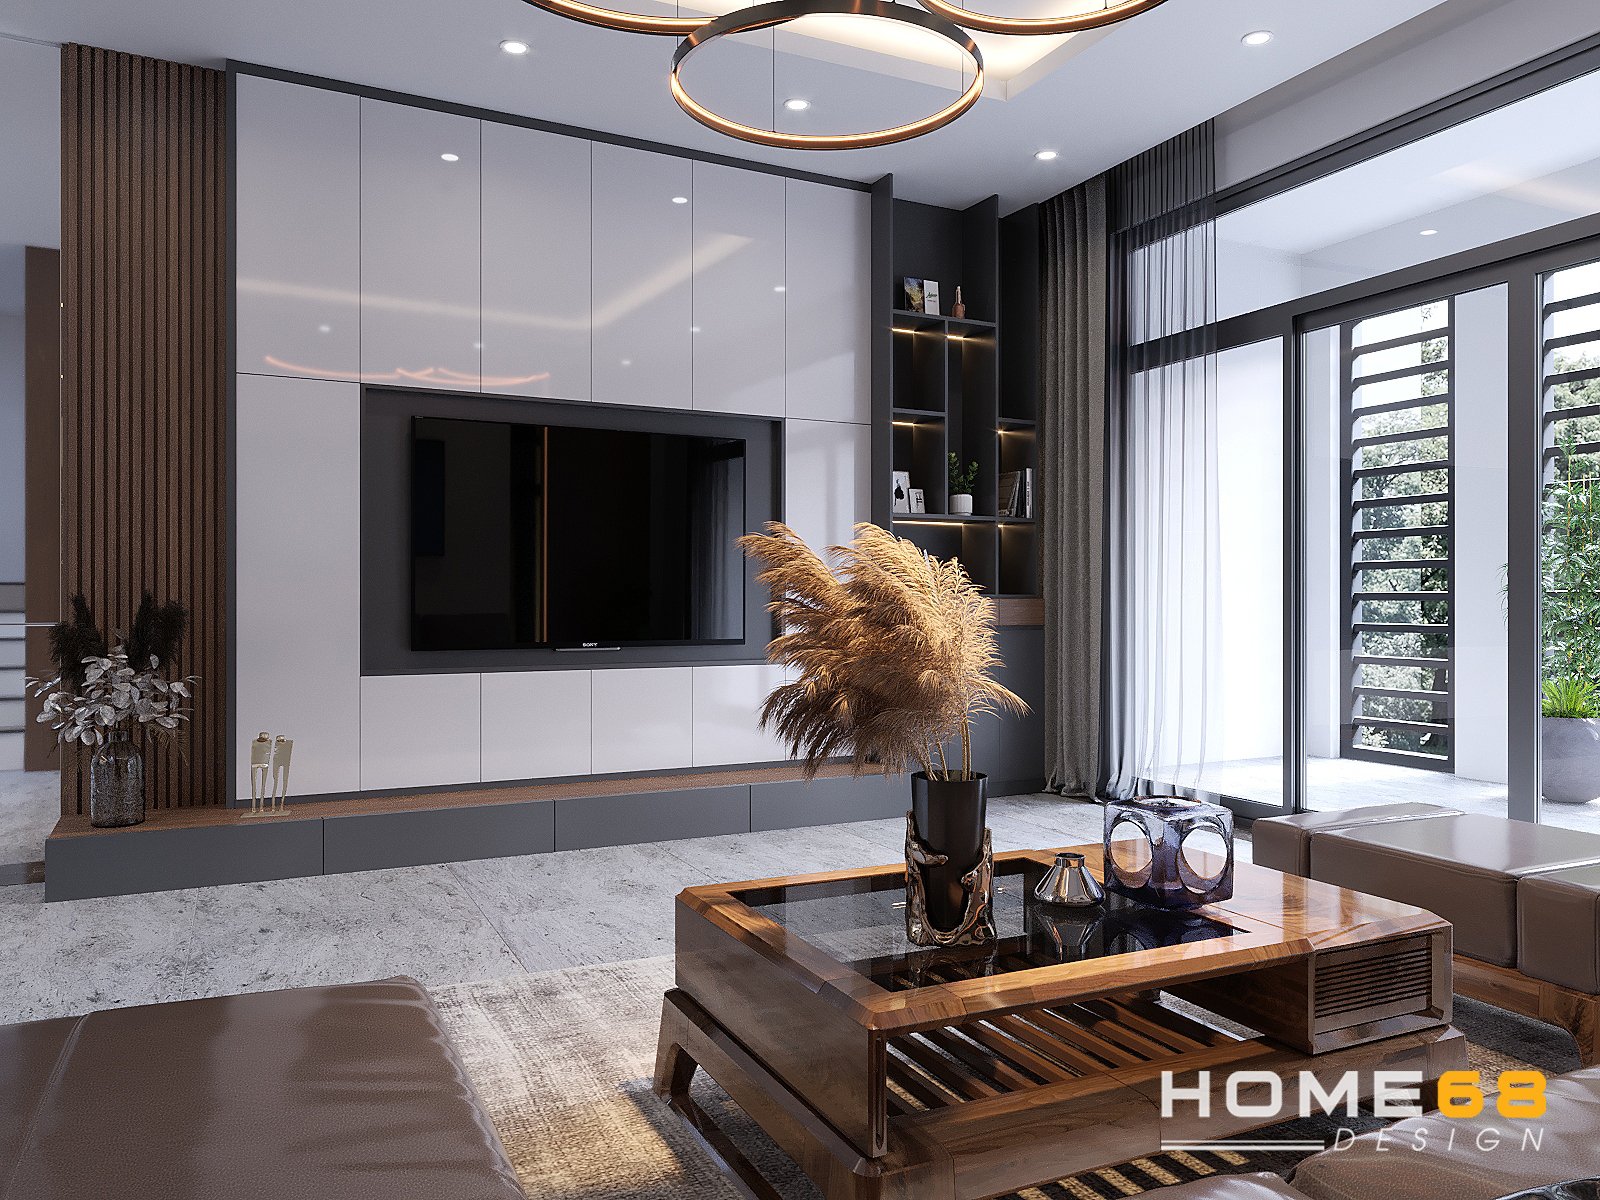 Thiết kế nội thất phòng khách hiện đại với tone màu nâu trắng đặc sắc- HOME68